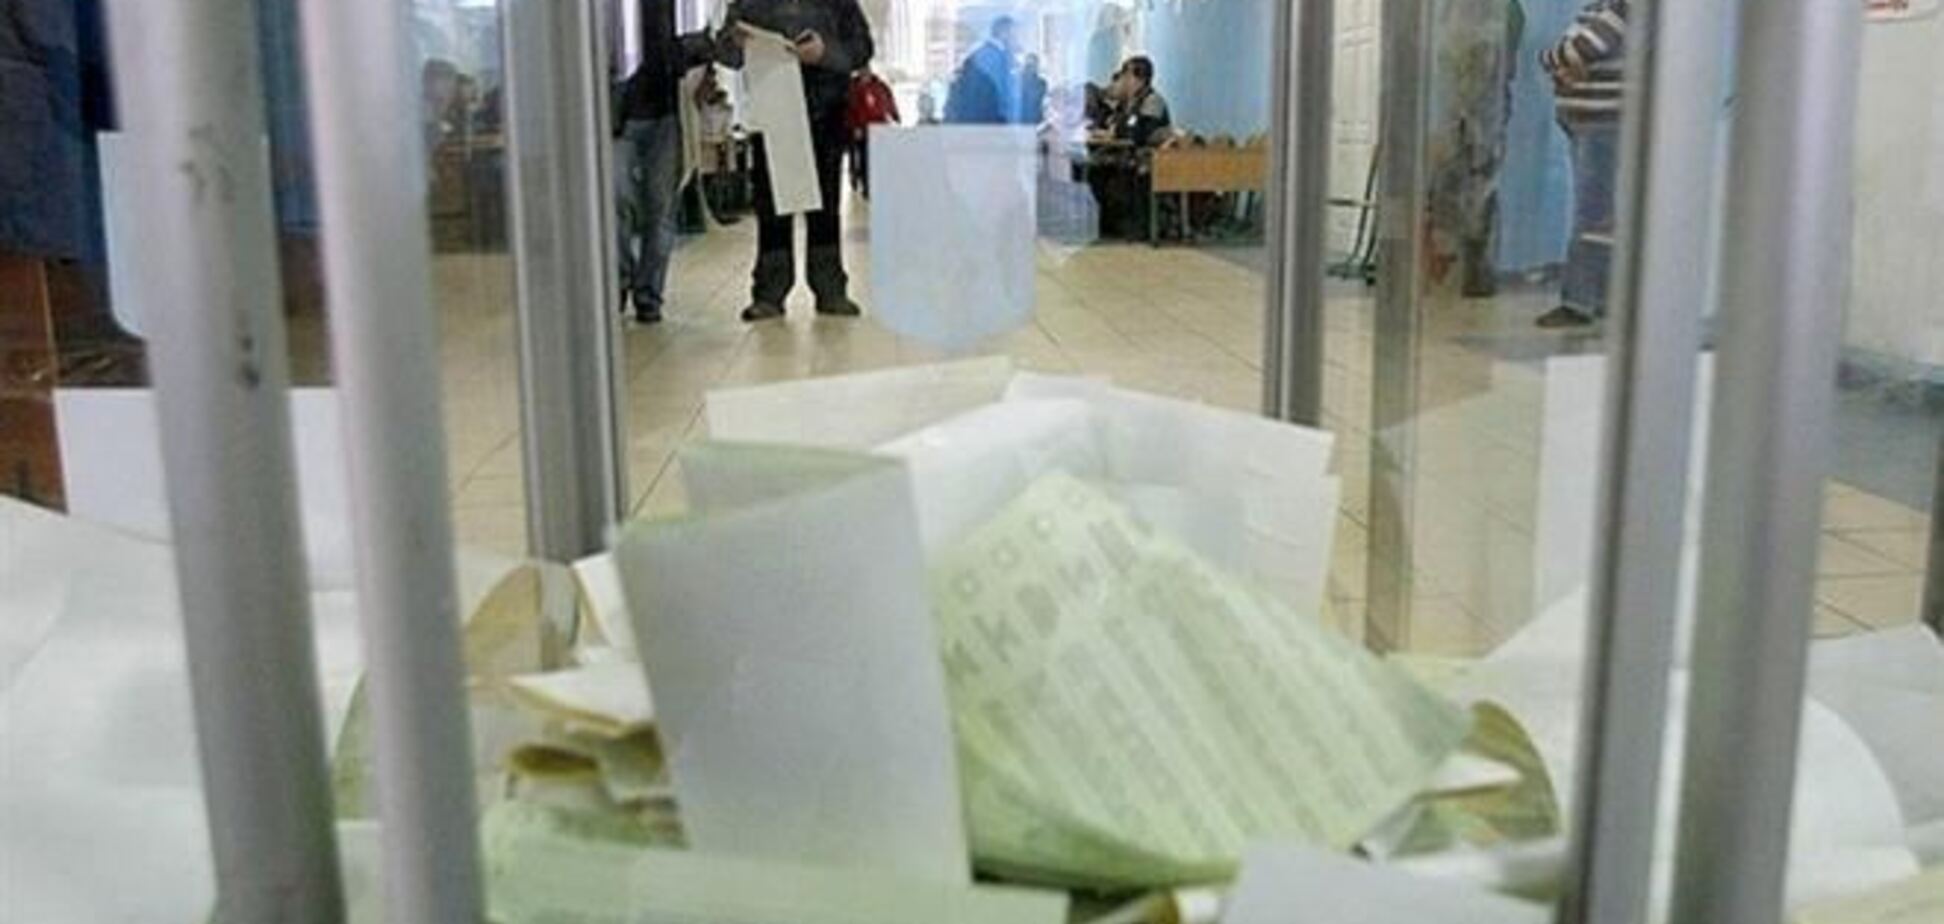 Подсчет голосов на довыборах проходит штатно – глава ЦИК 